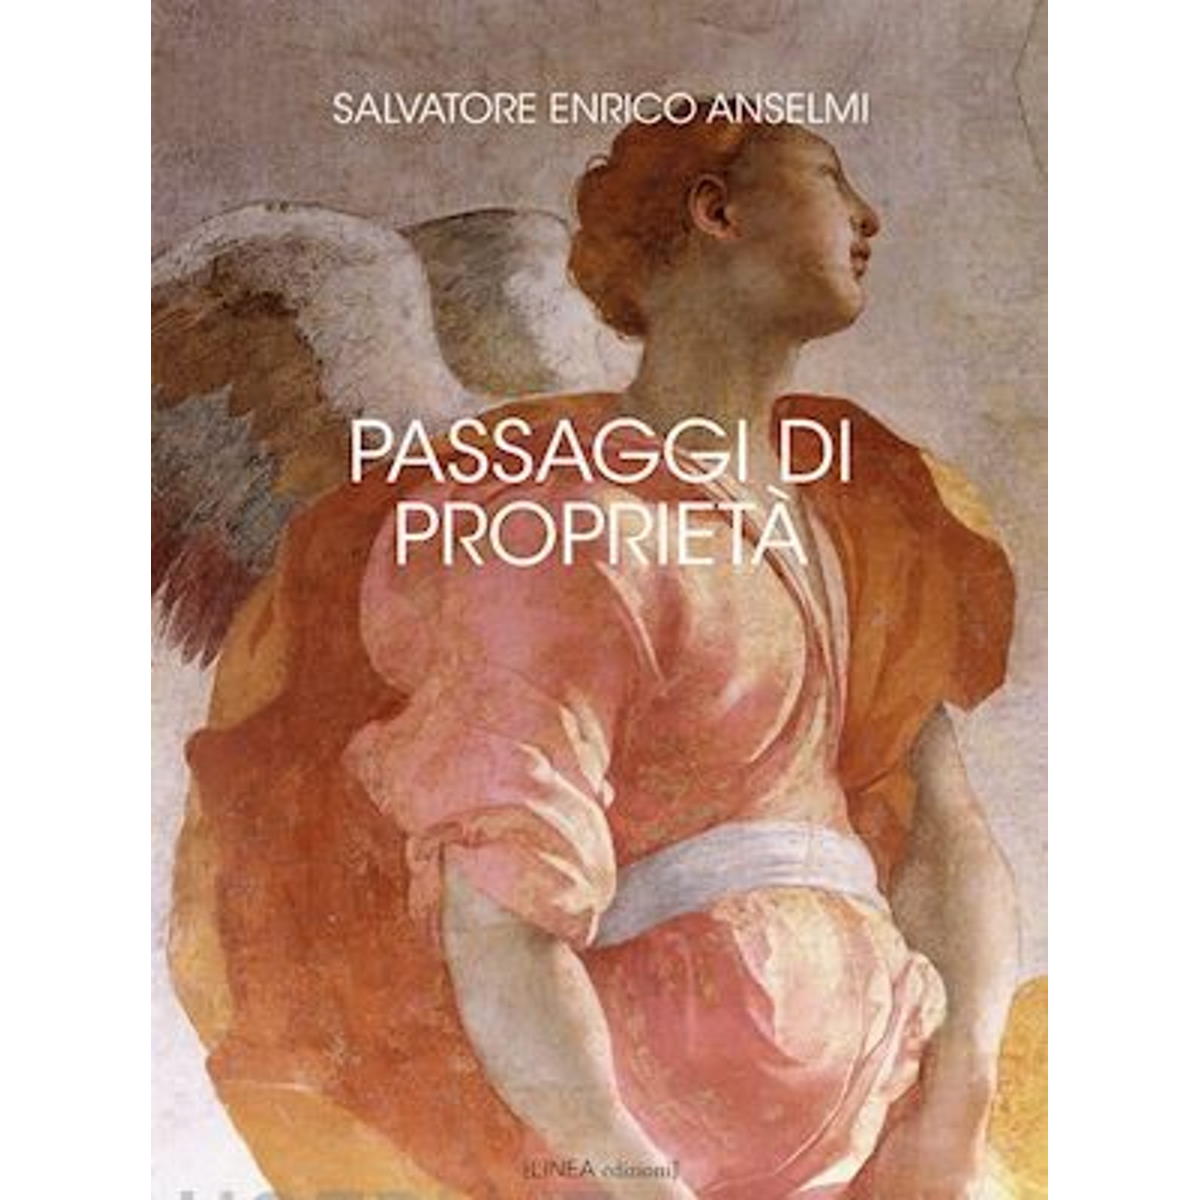 Grande successo di pubblico per la presentazione a Roma del romanzo di Salvatore Enrico Anselmi Passaggi di Proprietà